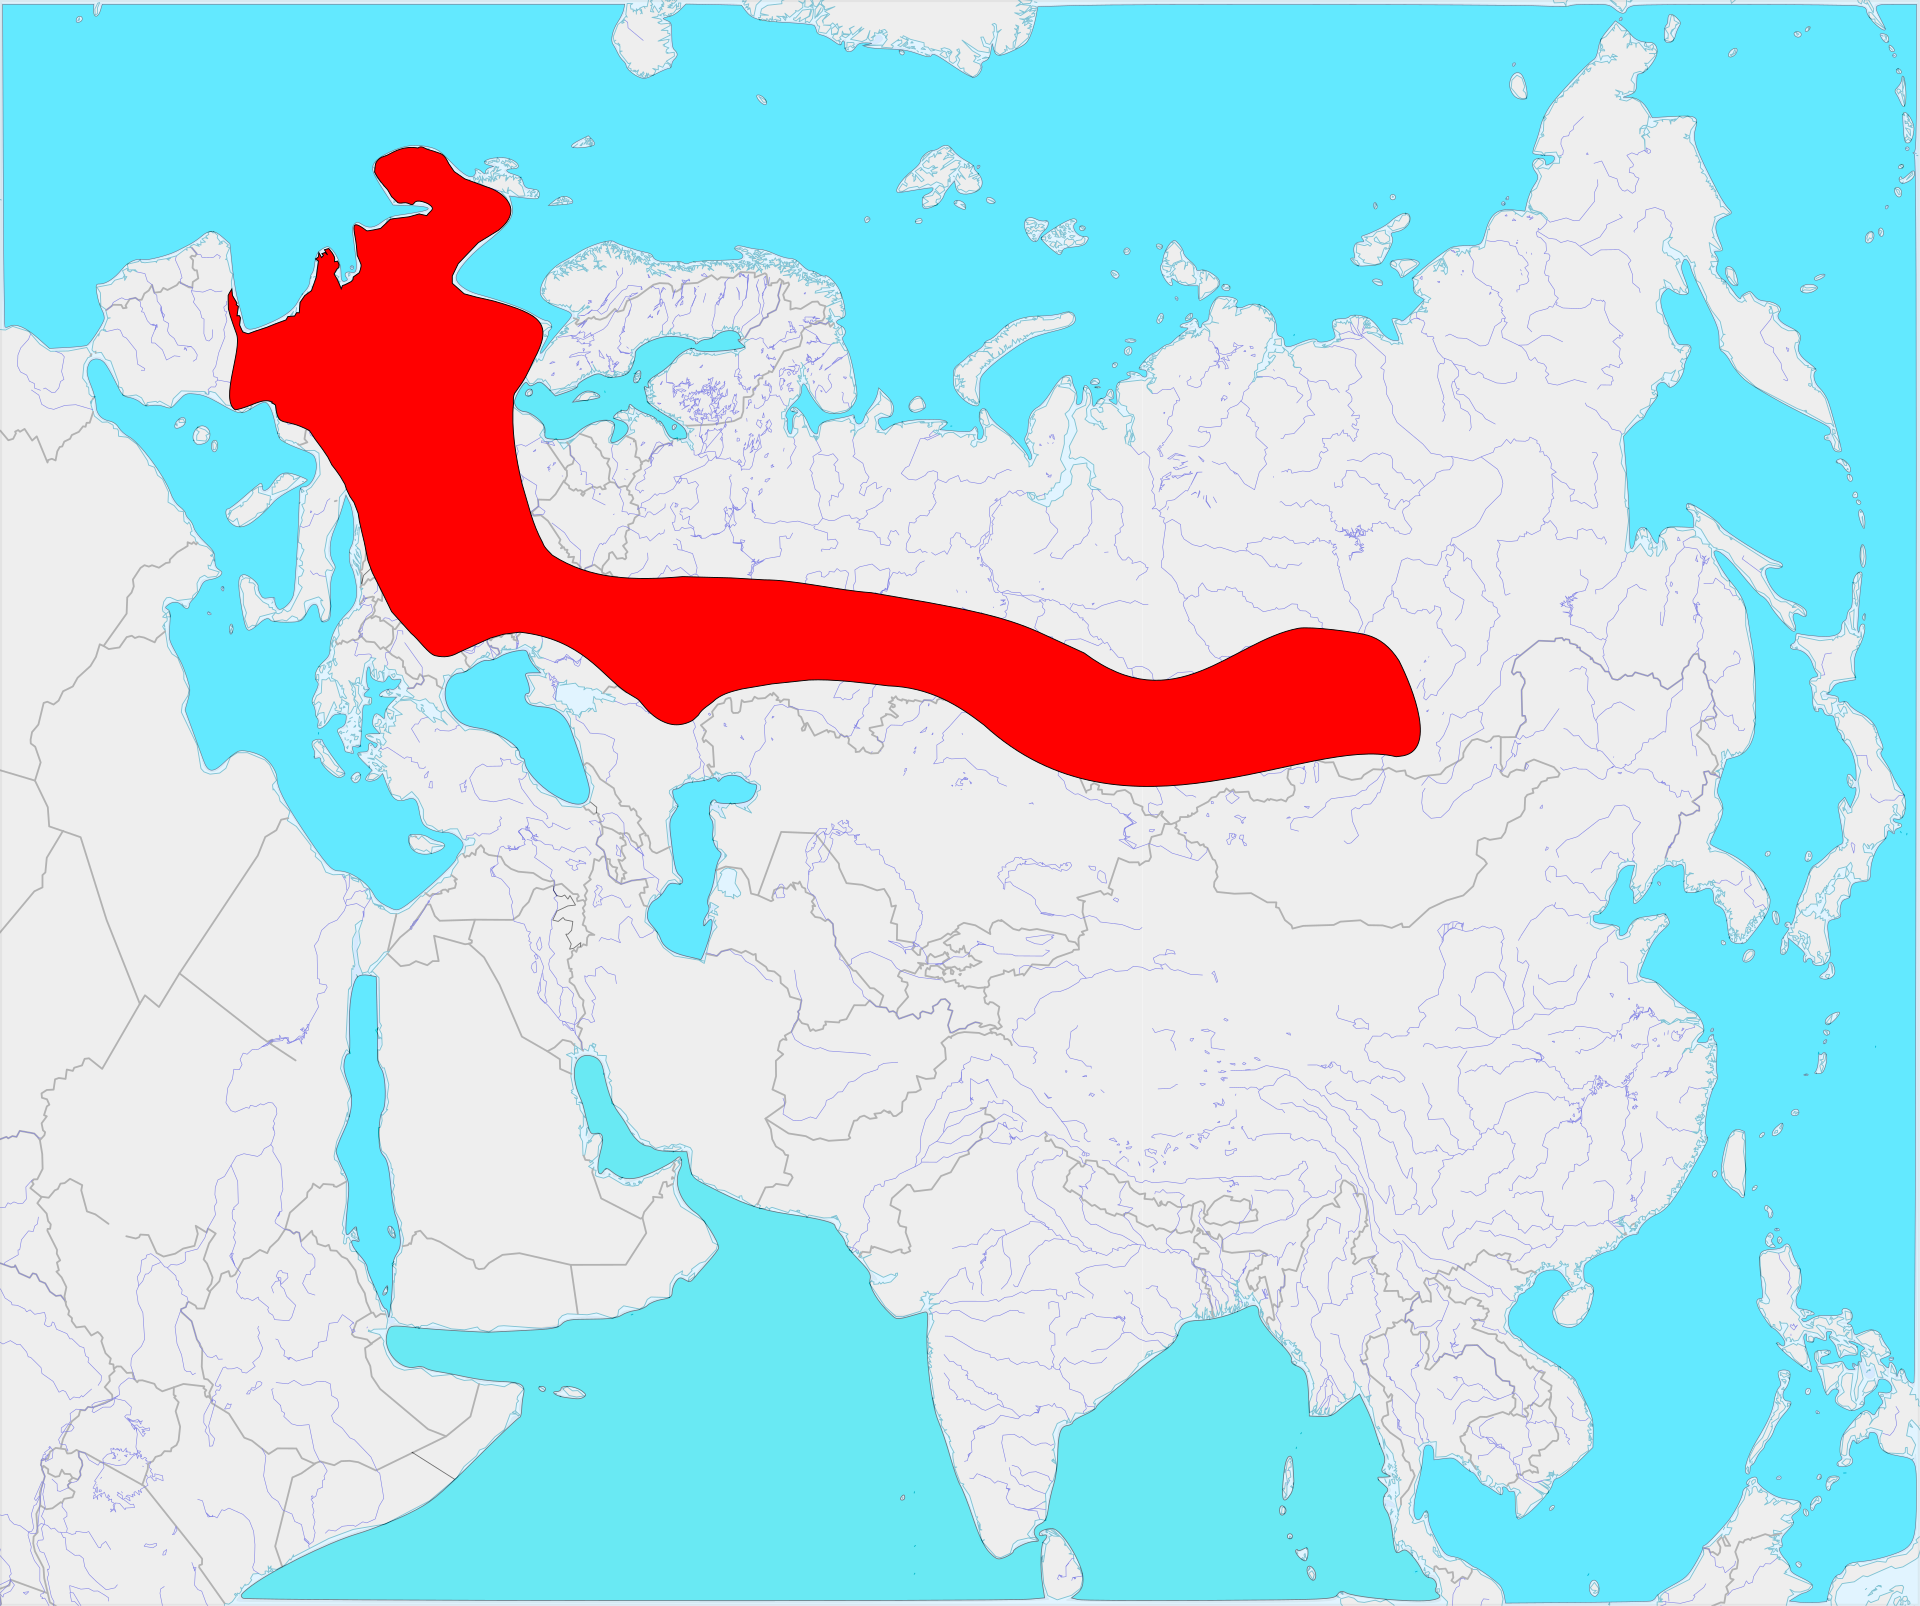 Source: Wikimedia Commons/Hemiauchenia